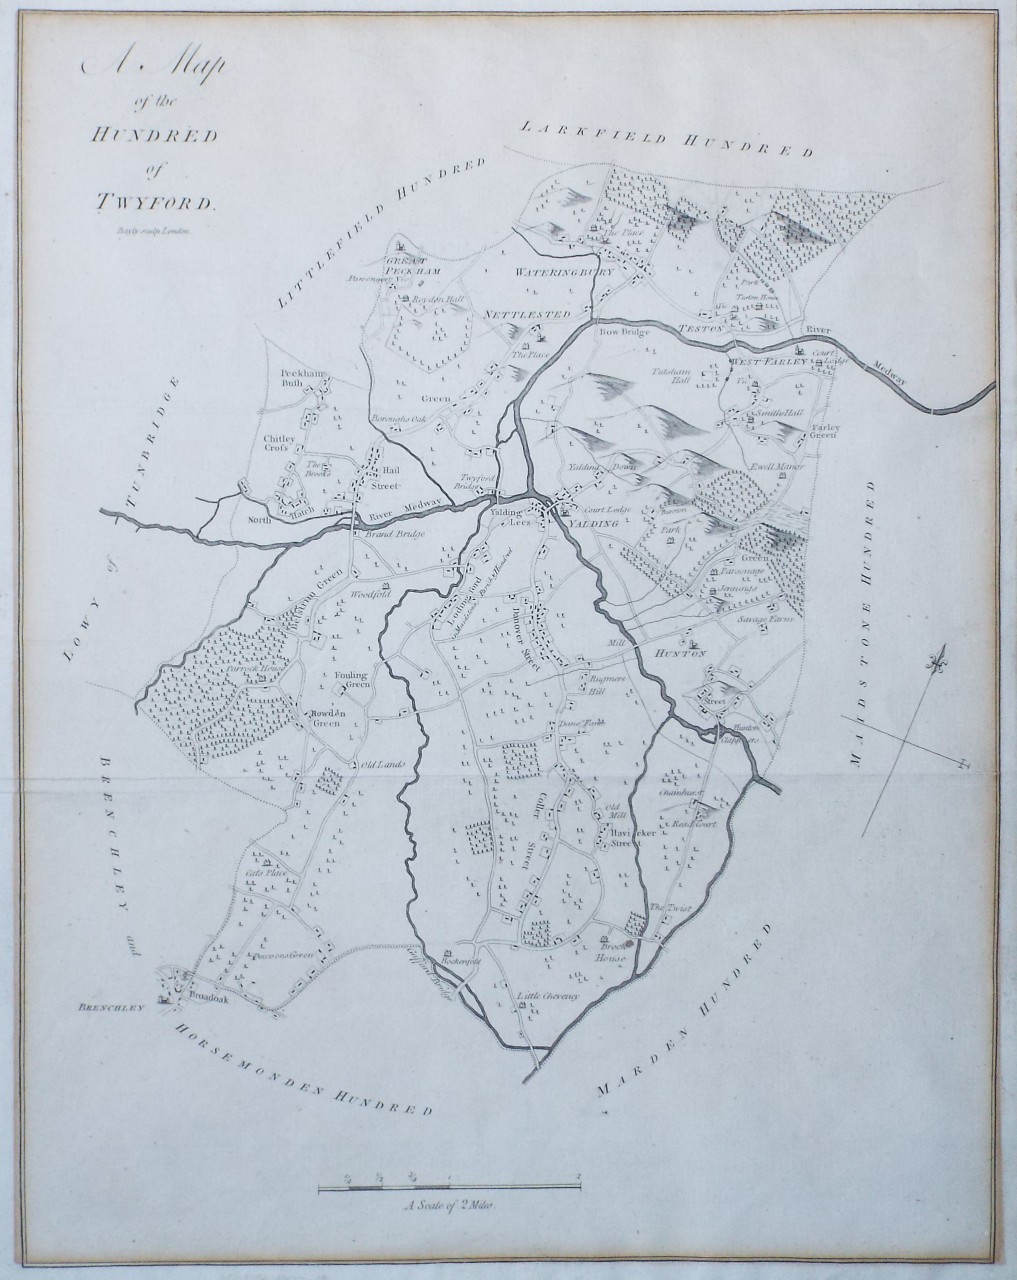 Map of Twyford